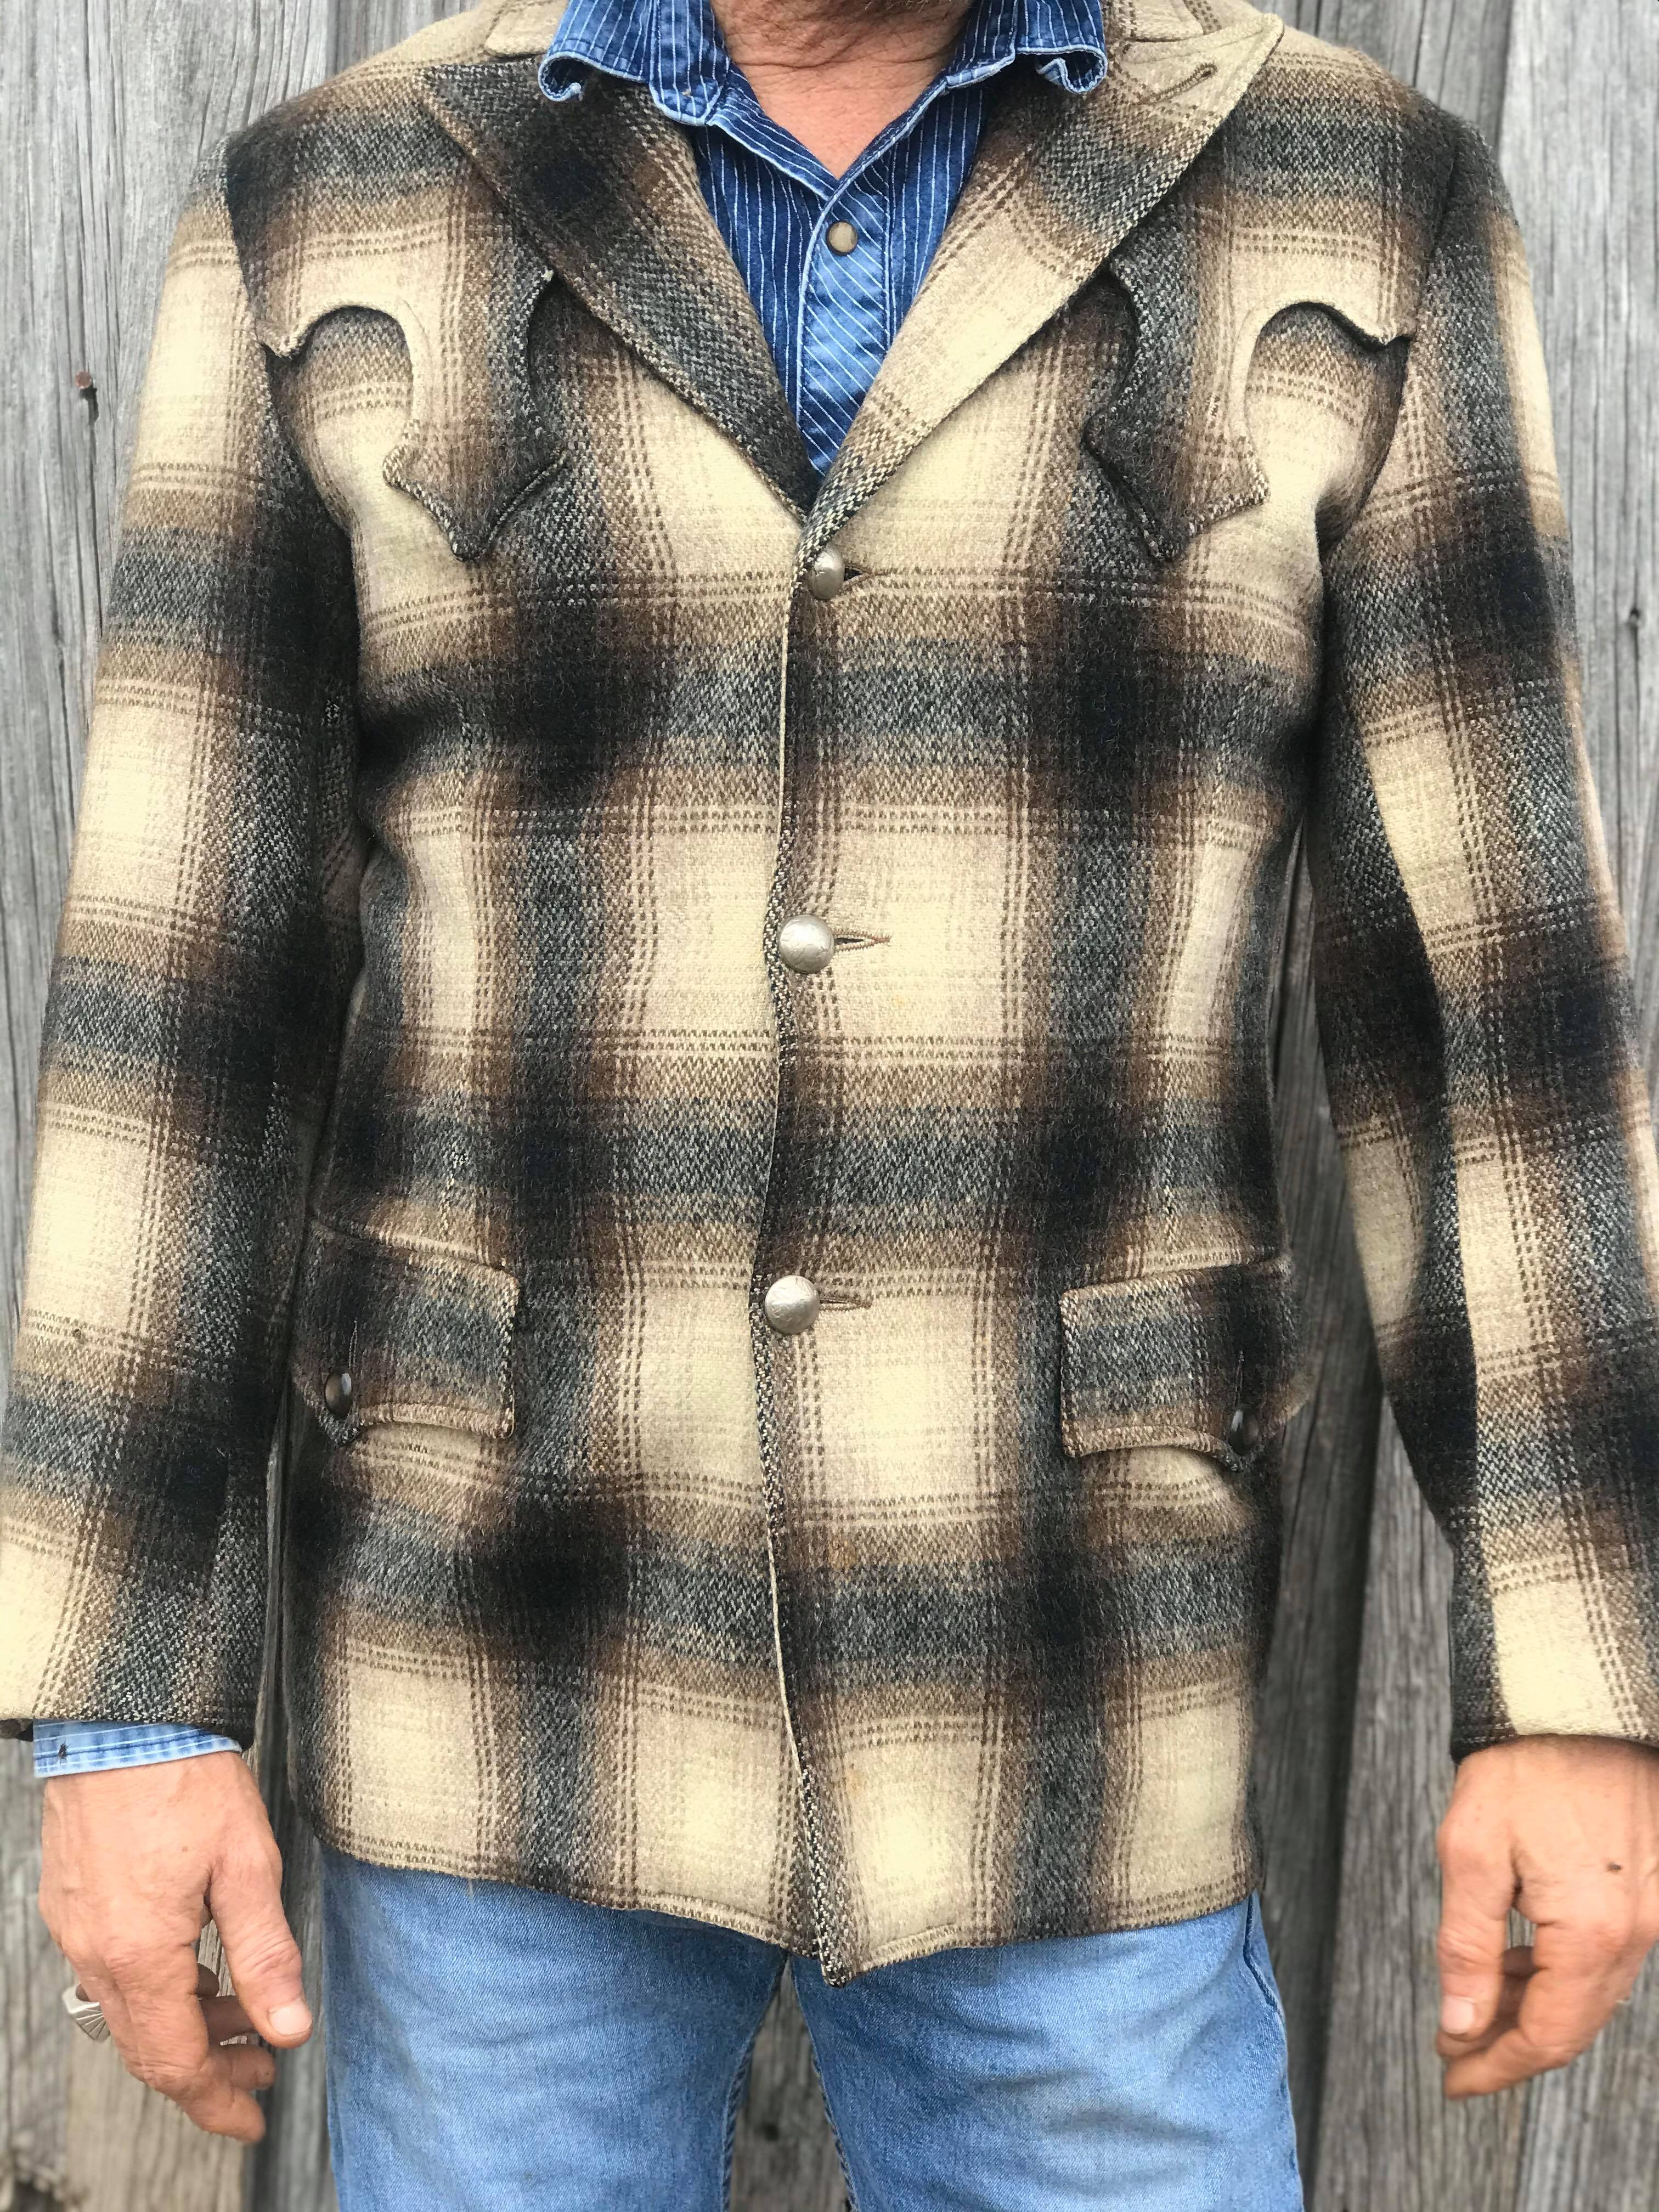 Vintage Pioneer Wear Jacket – Chad Isham